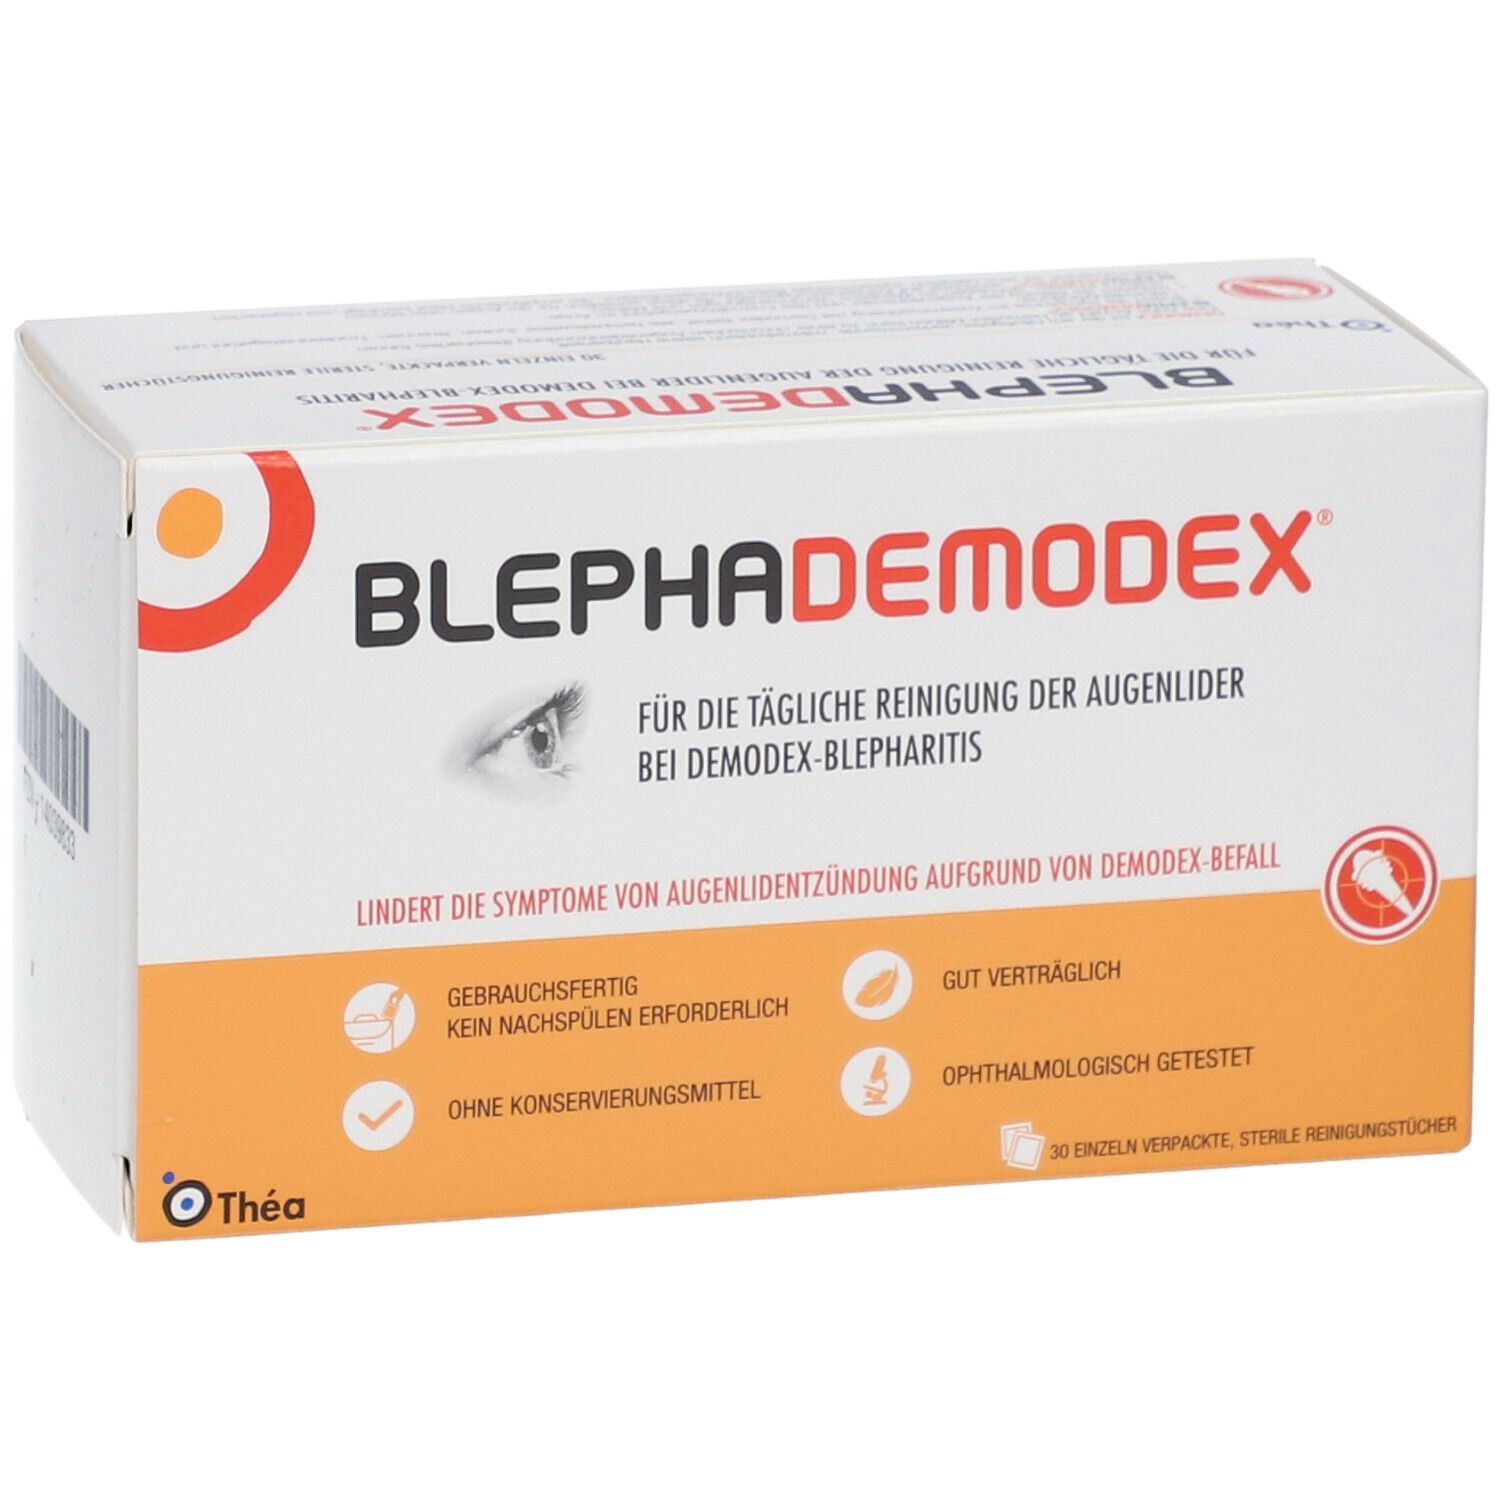 BLEPHADEMODEX sterile Reinigungstücher